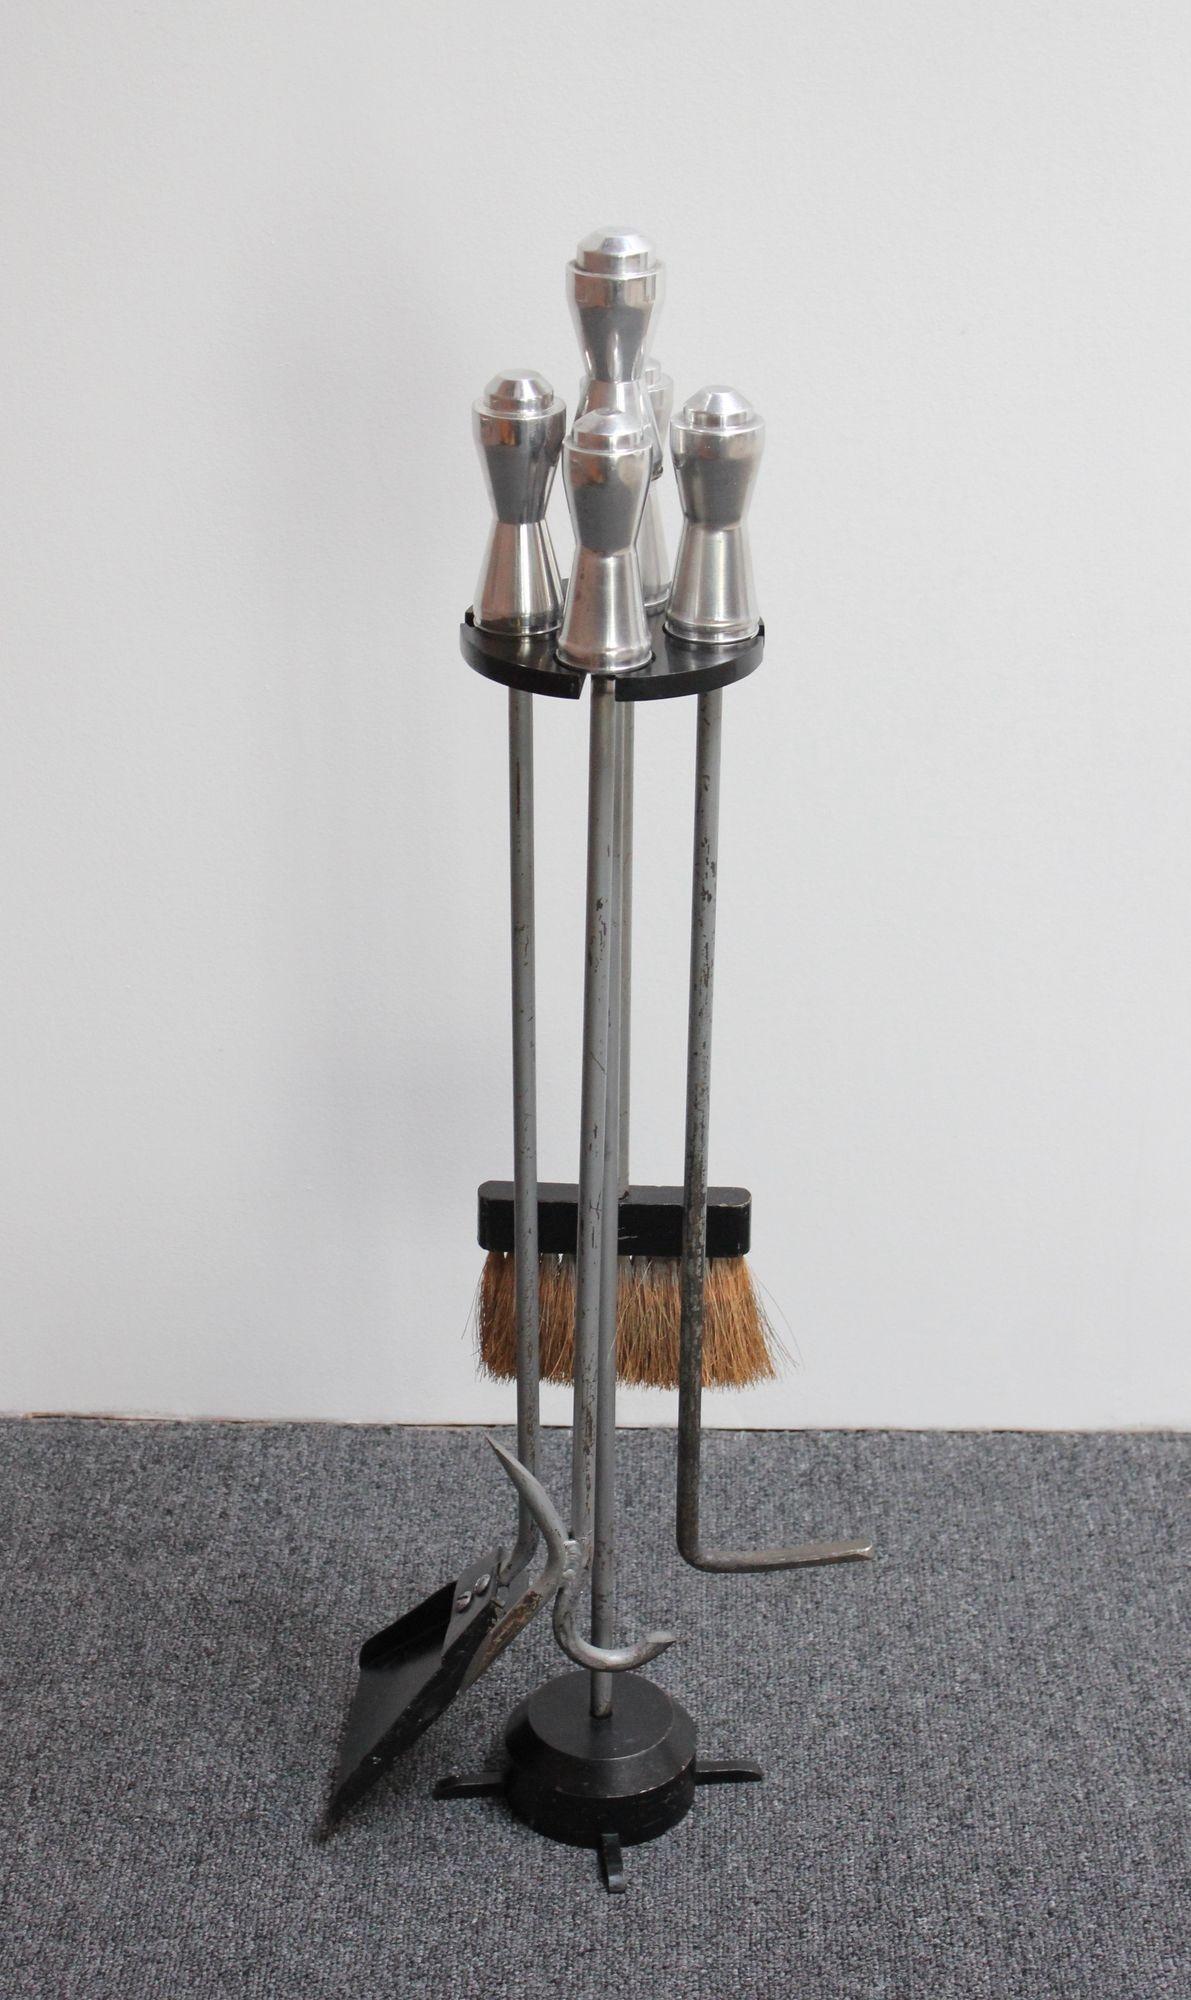 Vierteiliges Vintage-Feuerwerkzeugset mit Schaufel, Bürste, Schürhaken und Blasrohr (ca. 1940er Jahre, USA).
Der Ständer besteht aus einem schwarzen beschwerten Stahlsockel und einem Bakelit-Halter. Alle Griffe (Ständer und Werkzeuge) sind aus